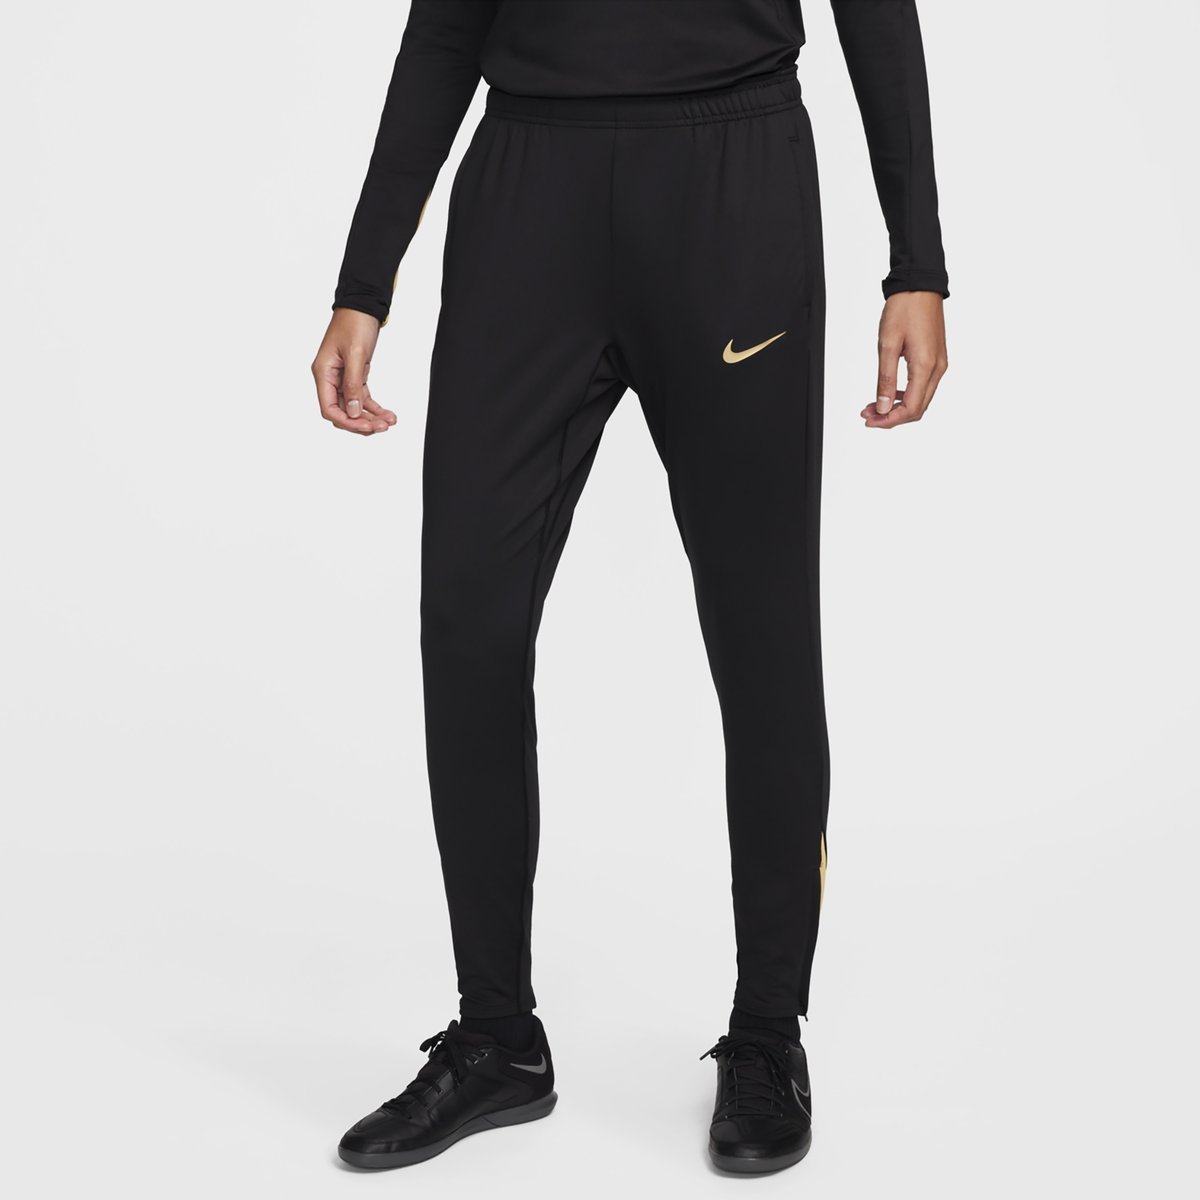 Nike Flex Swift Dri-fit Running Pants | Track pants mens, Running pants,  Nike flex